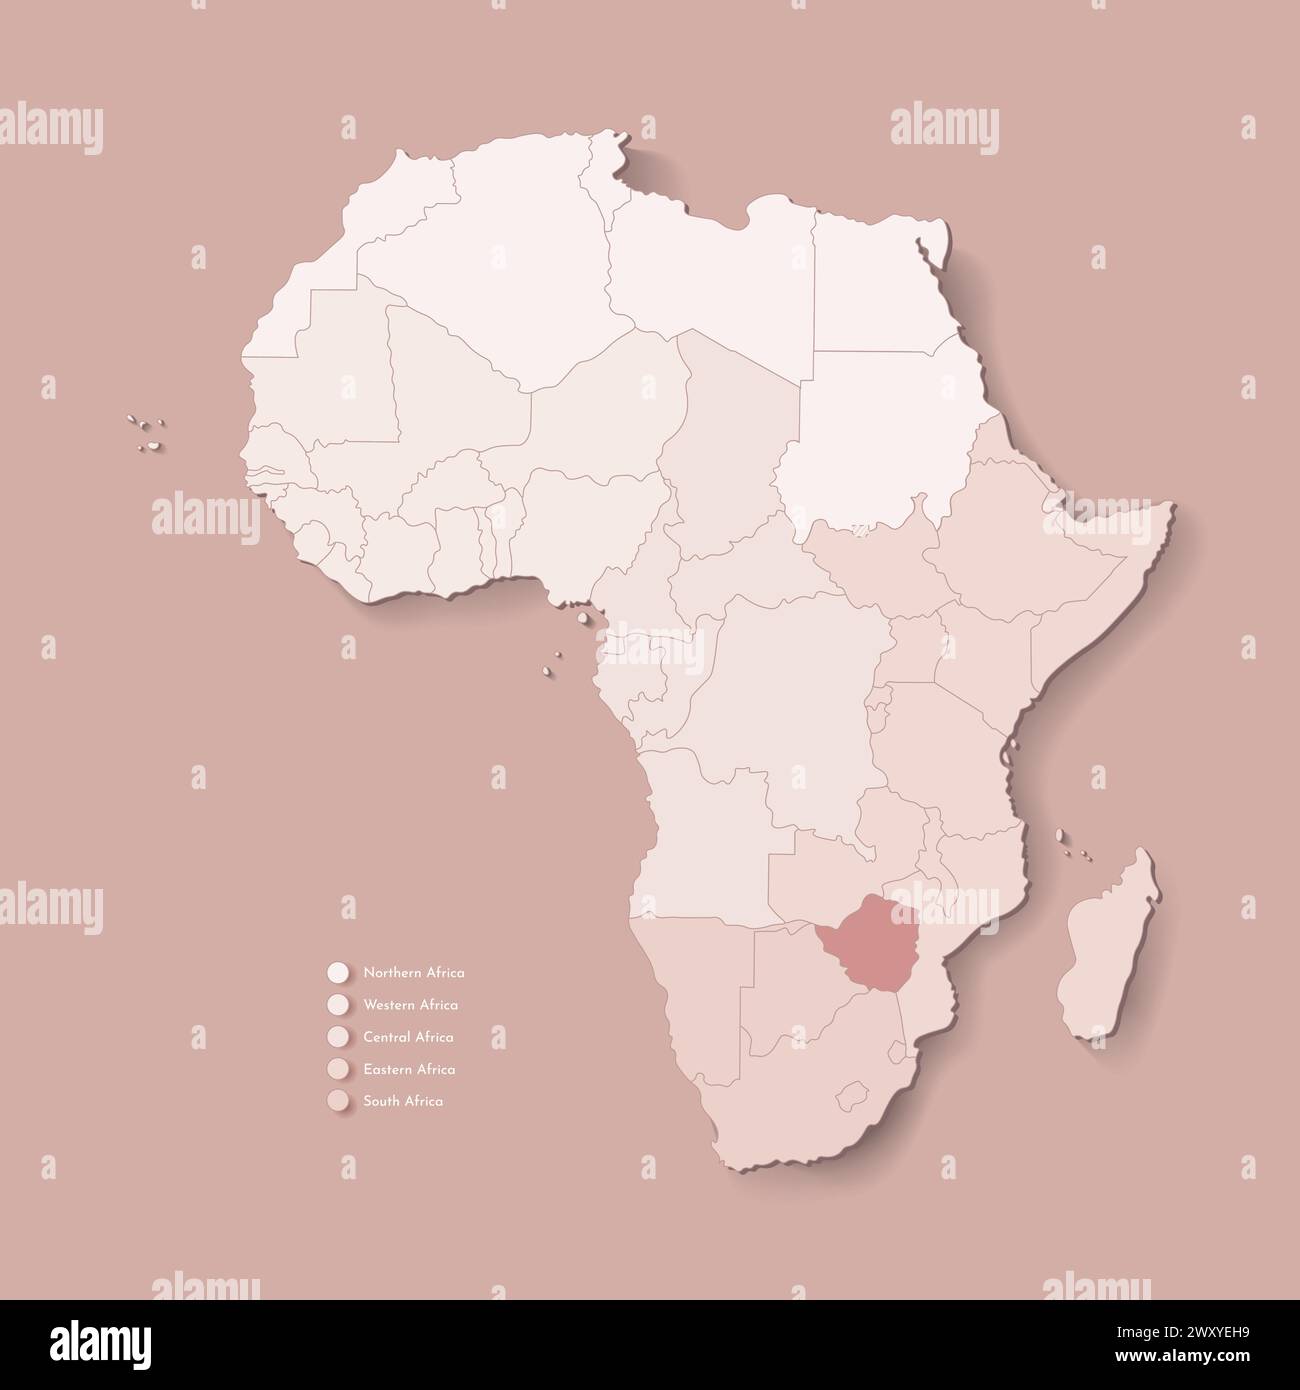 Illustrazione vettoriale con continente africano con confini di tutti gli stati e paese segnato Zimbabwe. Mappa politica di colore marrone con occidentale, sud A. Illustrazione Vettoriale